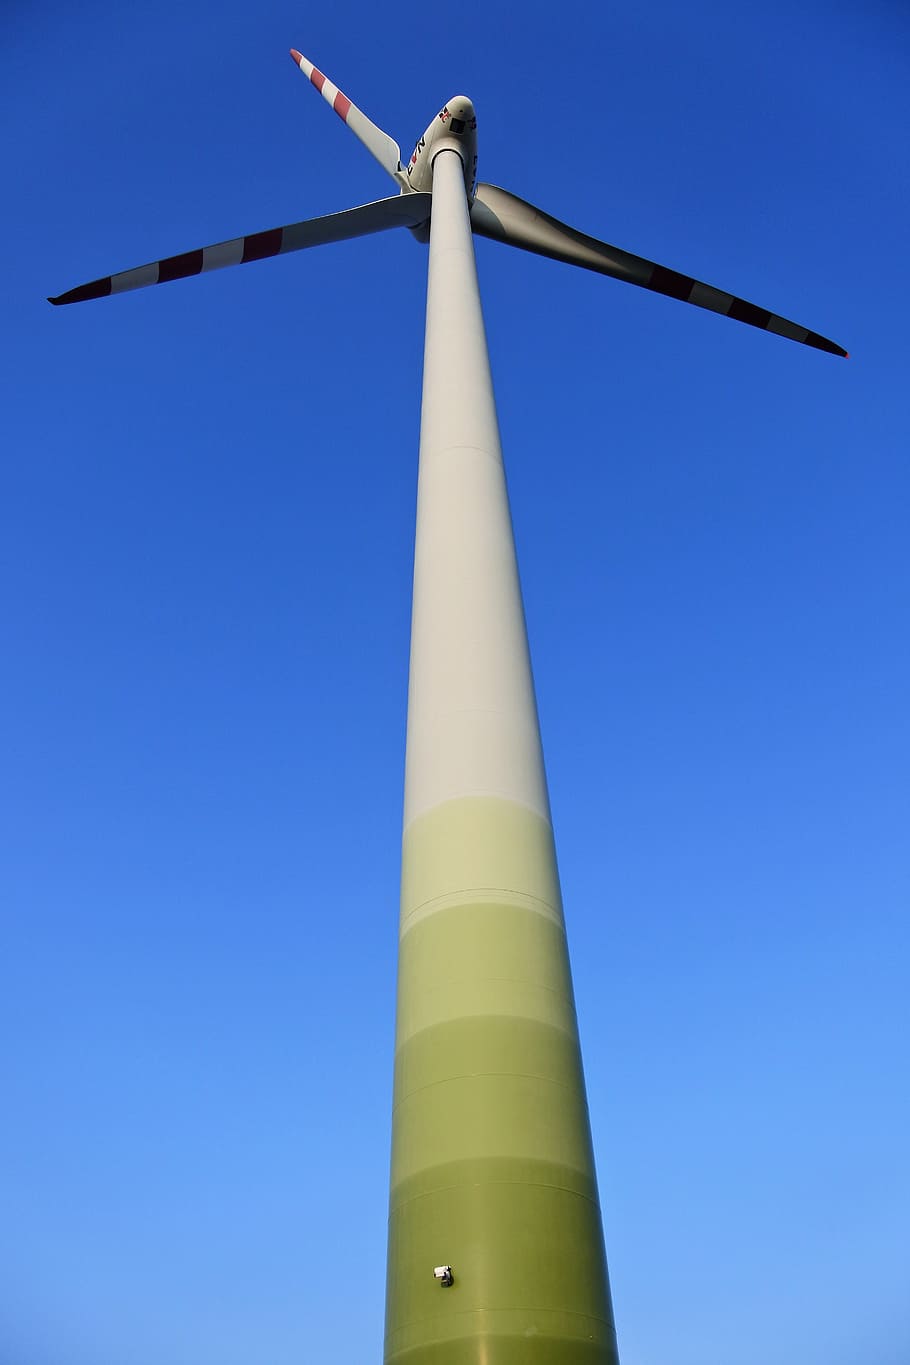 cielo azul, molinete, palas del rotor, rotor, actual, eco, energía, viento, energía eólica, generación de energía